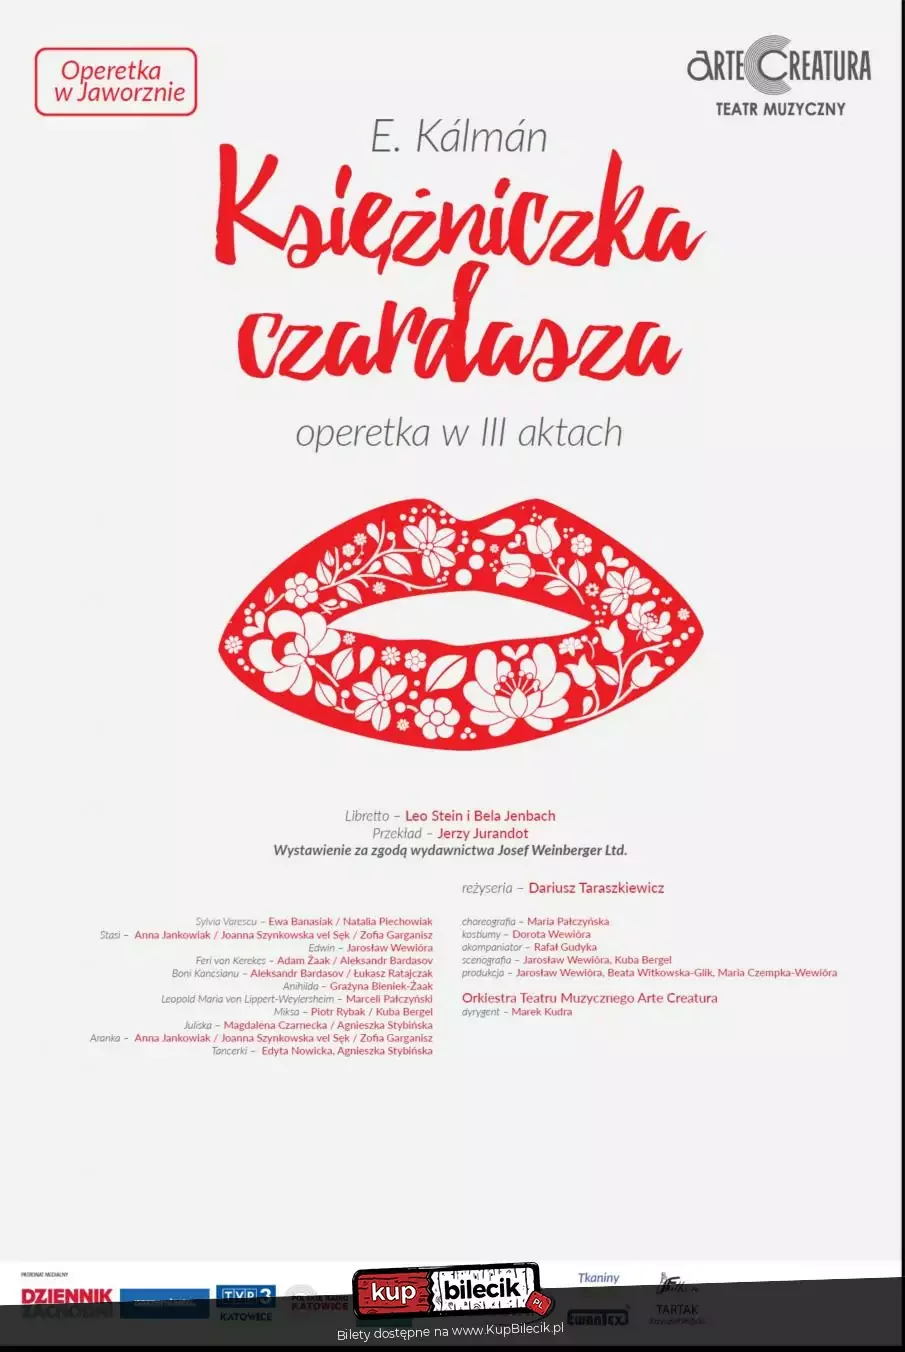 Księżniczka czardasza I.Kalman operetka - Arte Creatura Teatr Muzyczny